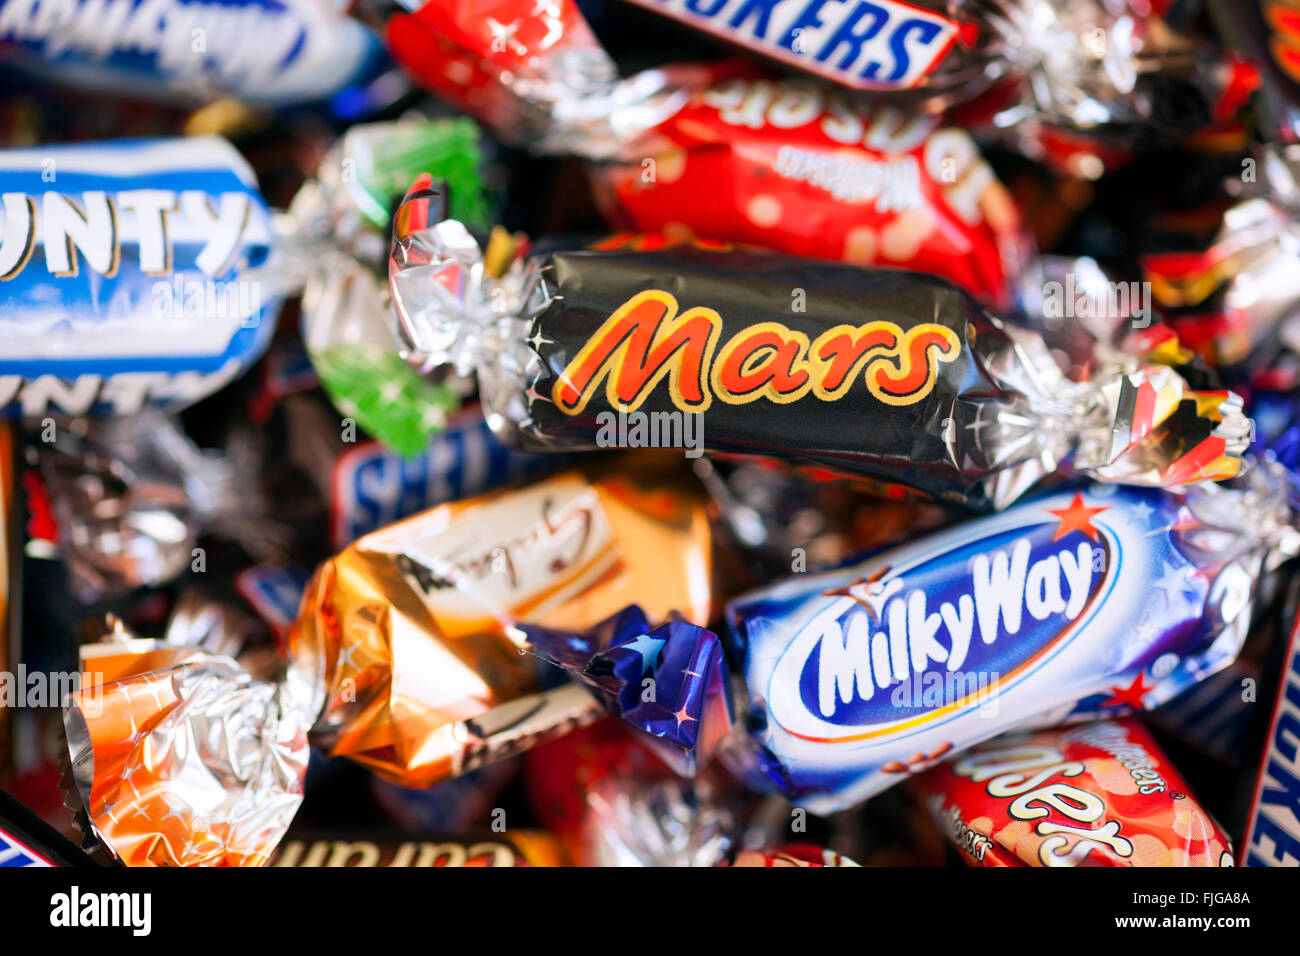 Paphos, Chypre - 19 décembre 2013 tas de Mars, Snickers, Milky Way, Galaxy, d'abondance et de Maltesers réflexion bonbons. Banque D'Images